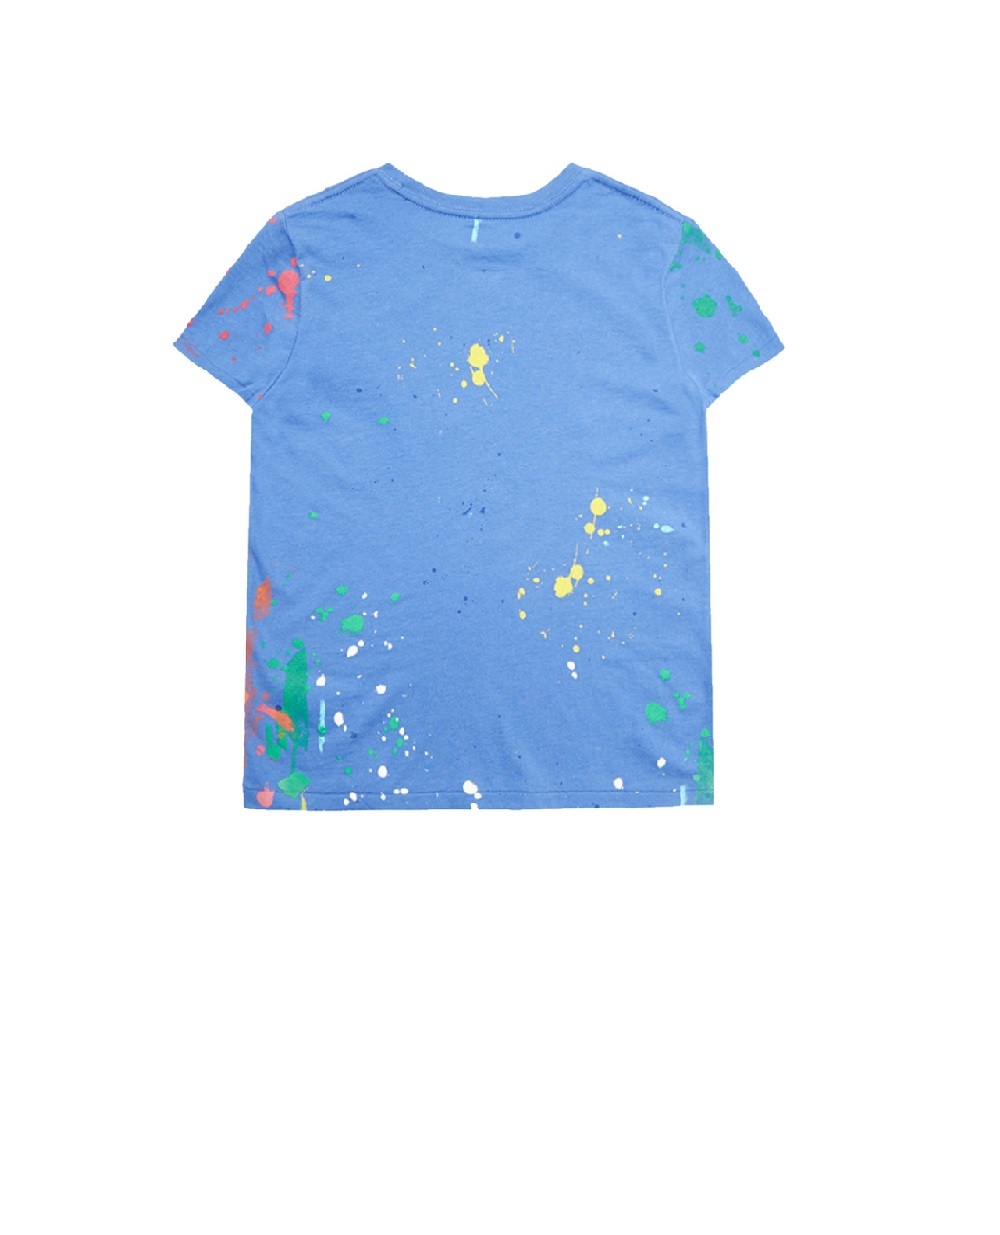 Дитяча футболка Polo Bear Polo Ralph Lauren Kids 313868484002, синій колір • Купити в інтернет-магазині Kameron